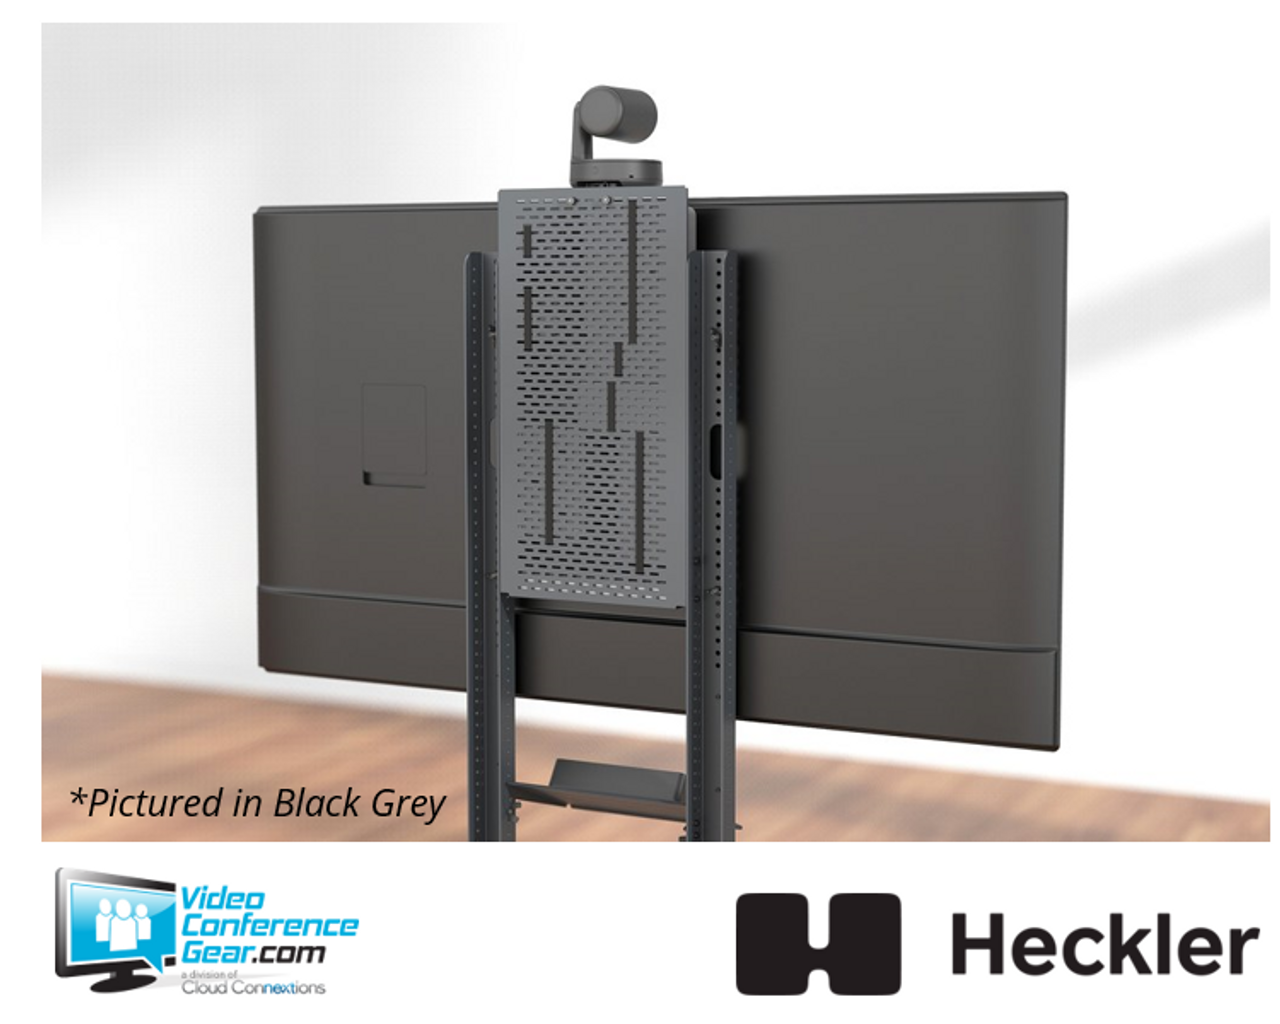 Heckler H708 Device Panel XL for Heckler AV Cart - White